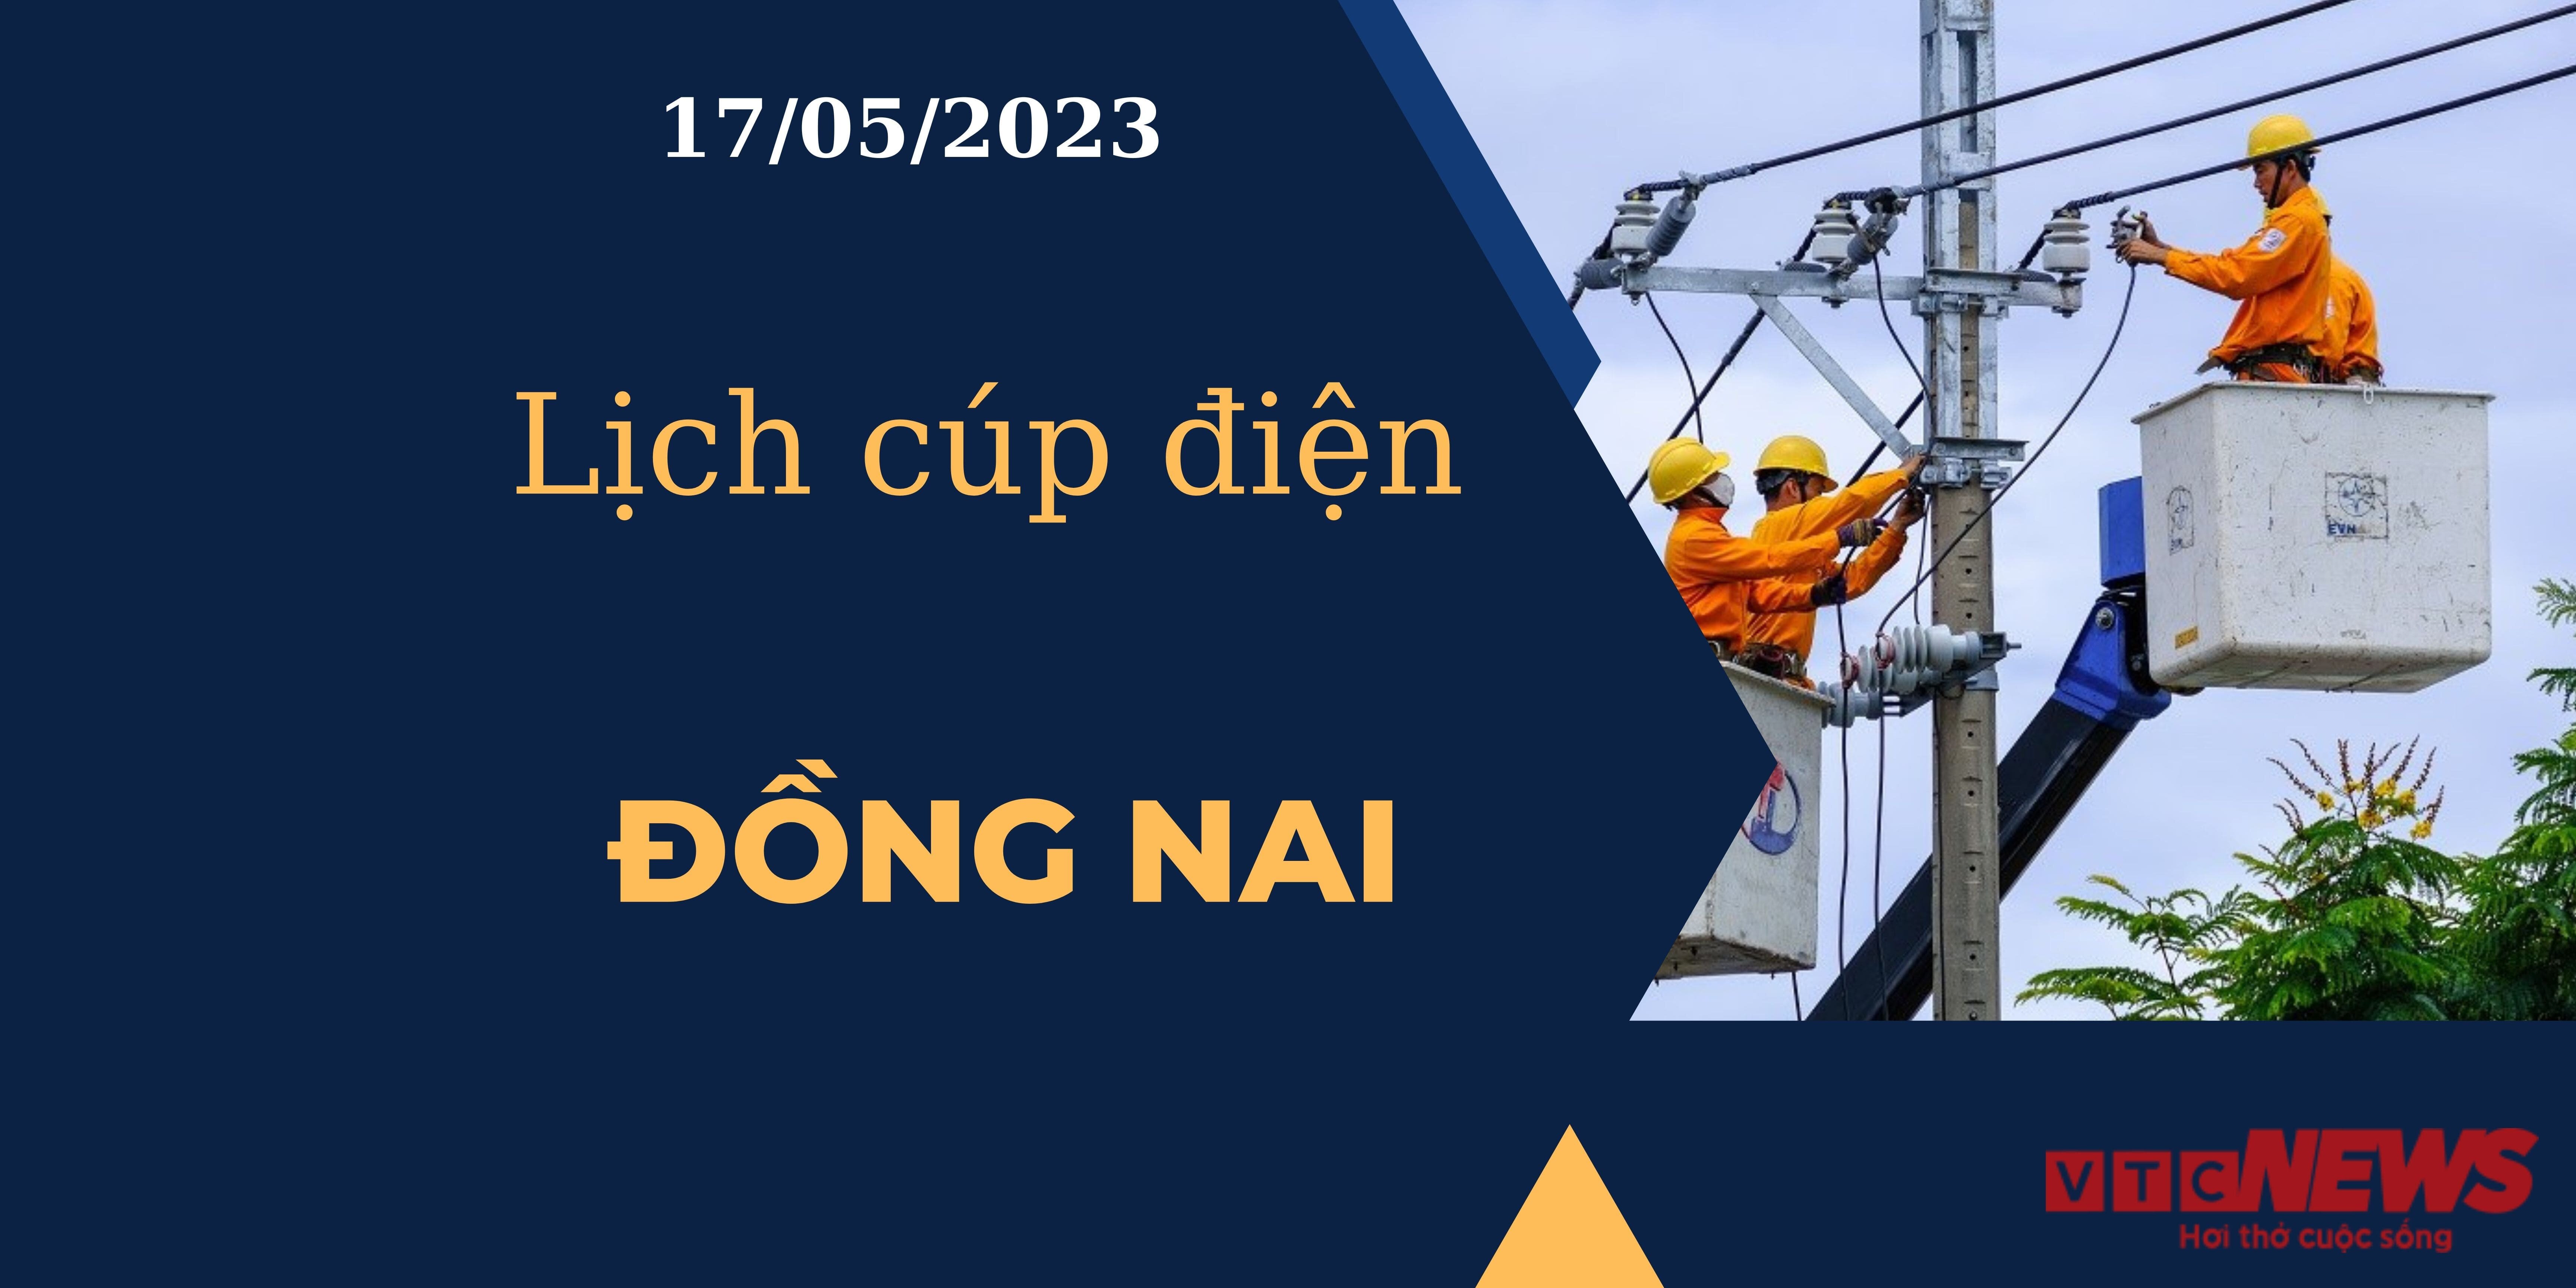 Lịch cúp điện hôm nay ngày 17/05/2023 tại Đồng Nai - 1